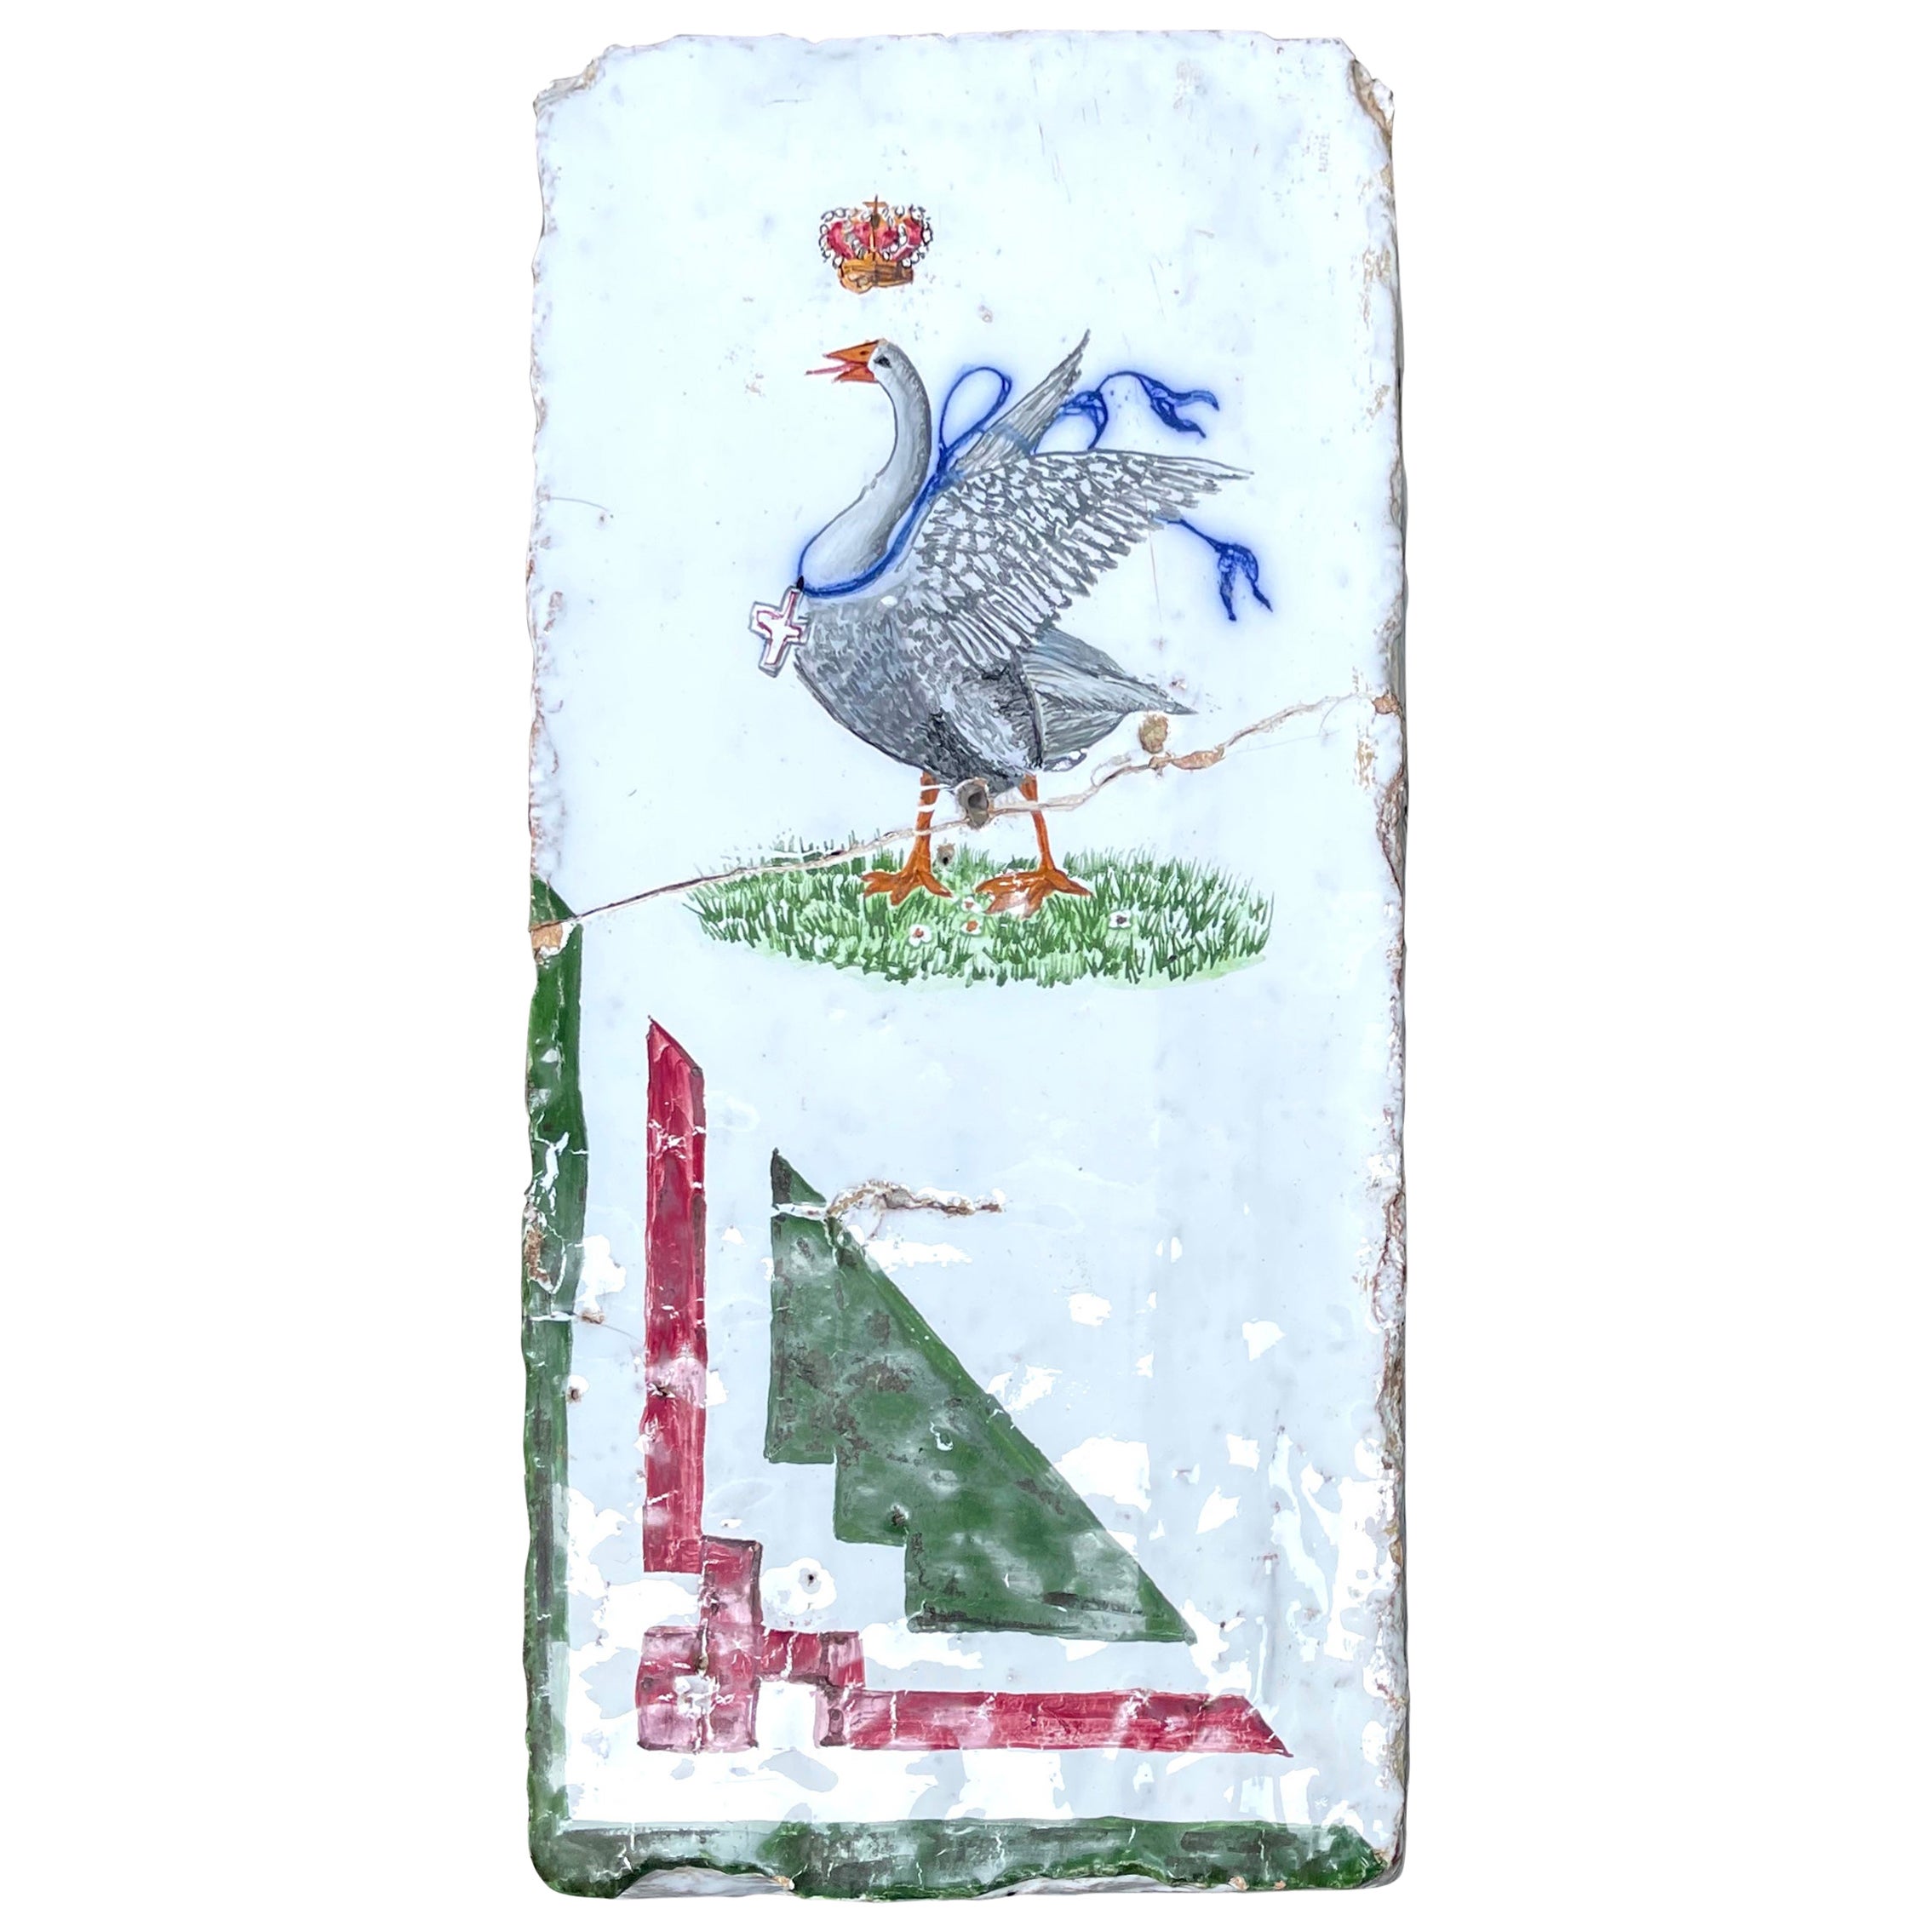 Palio Horse Race Goose Emblem